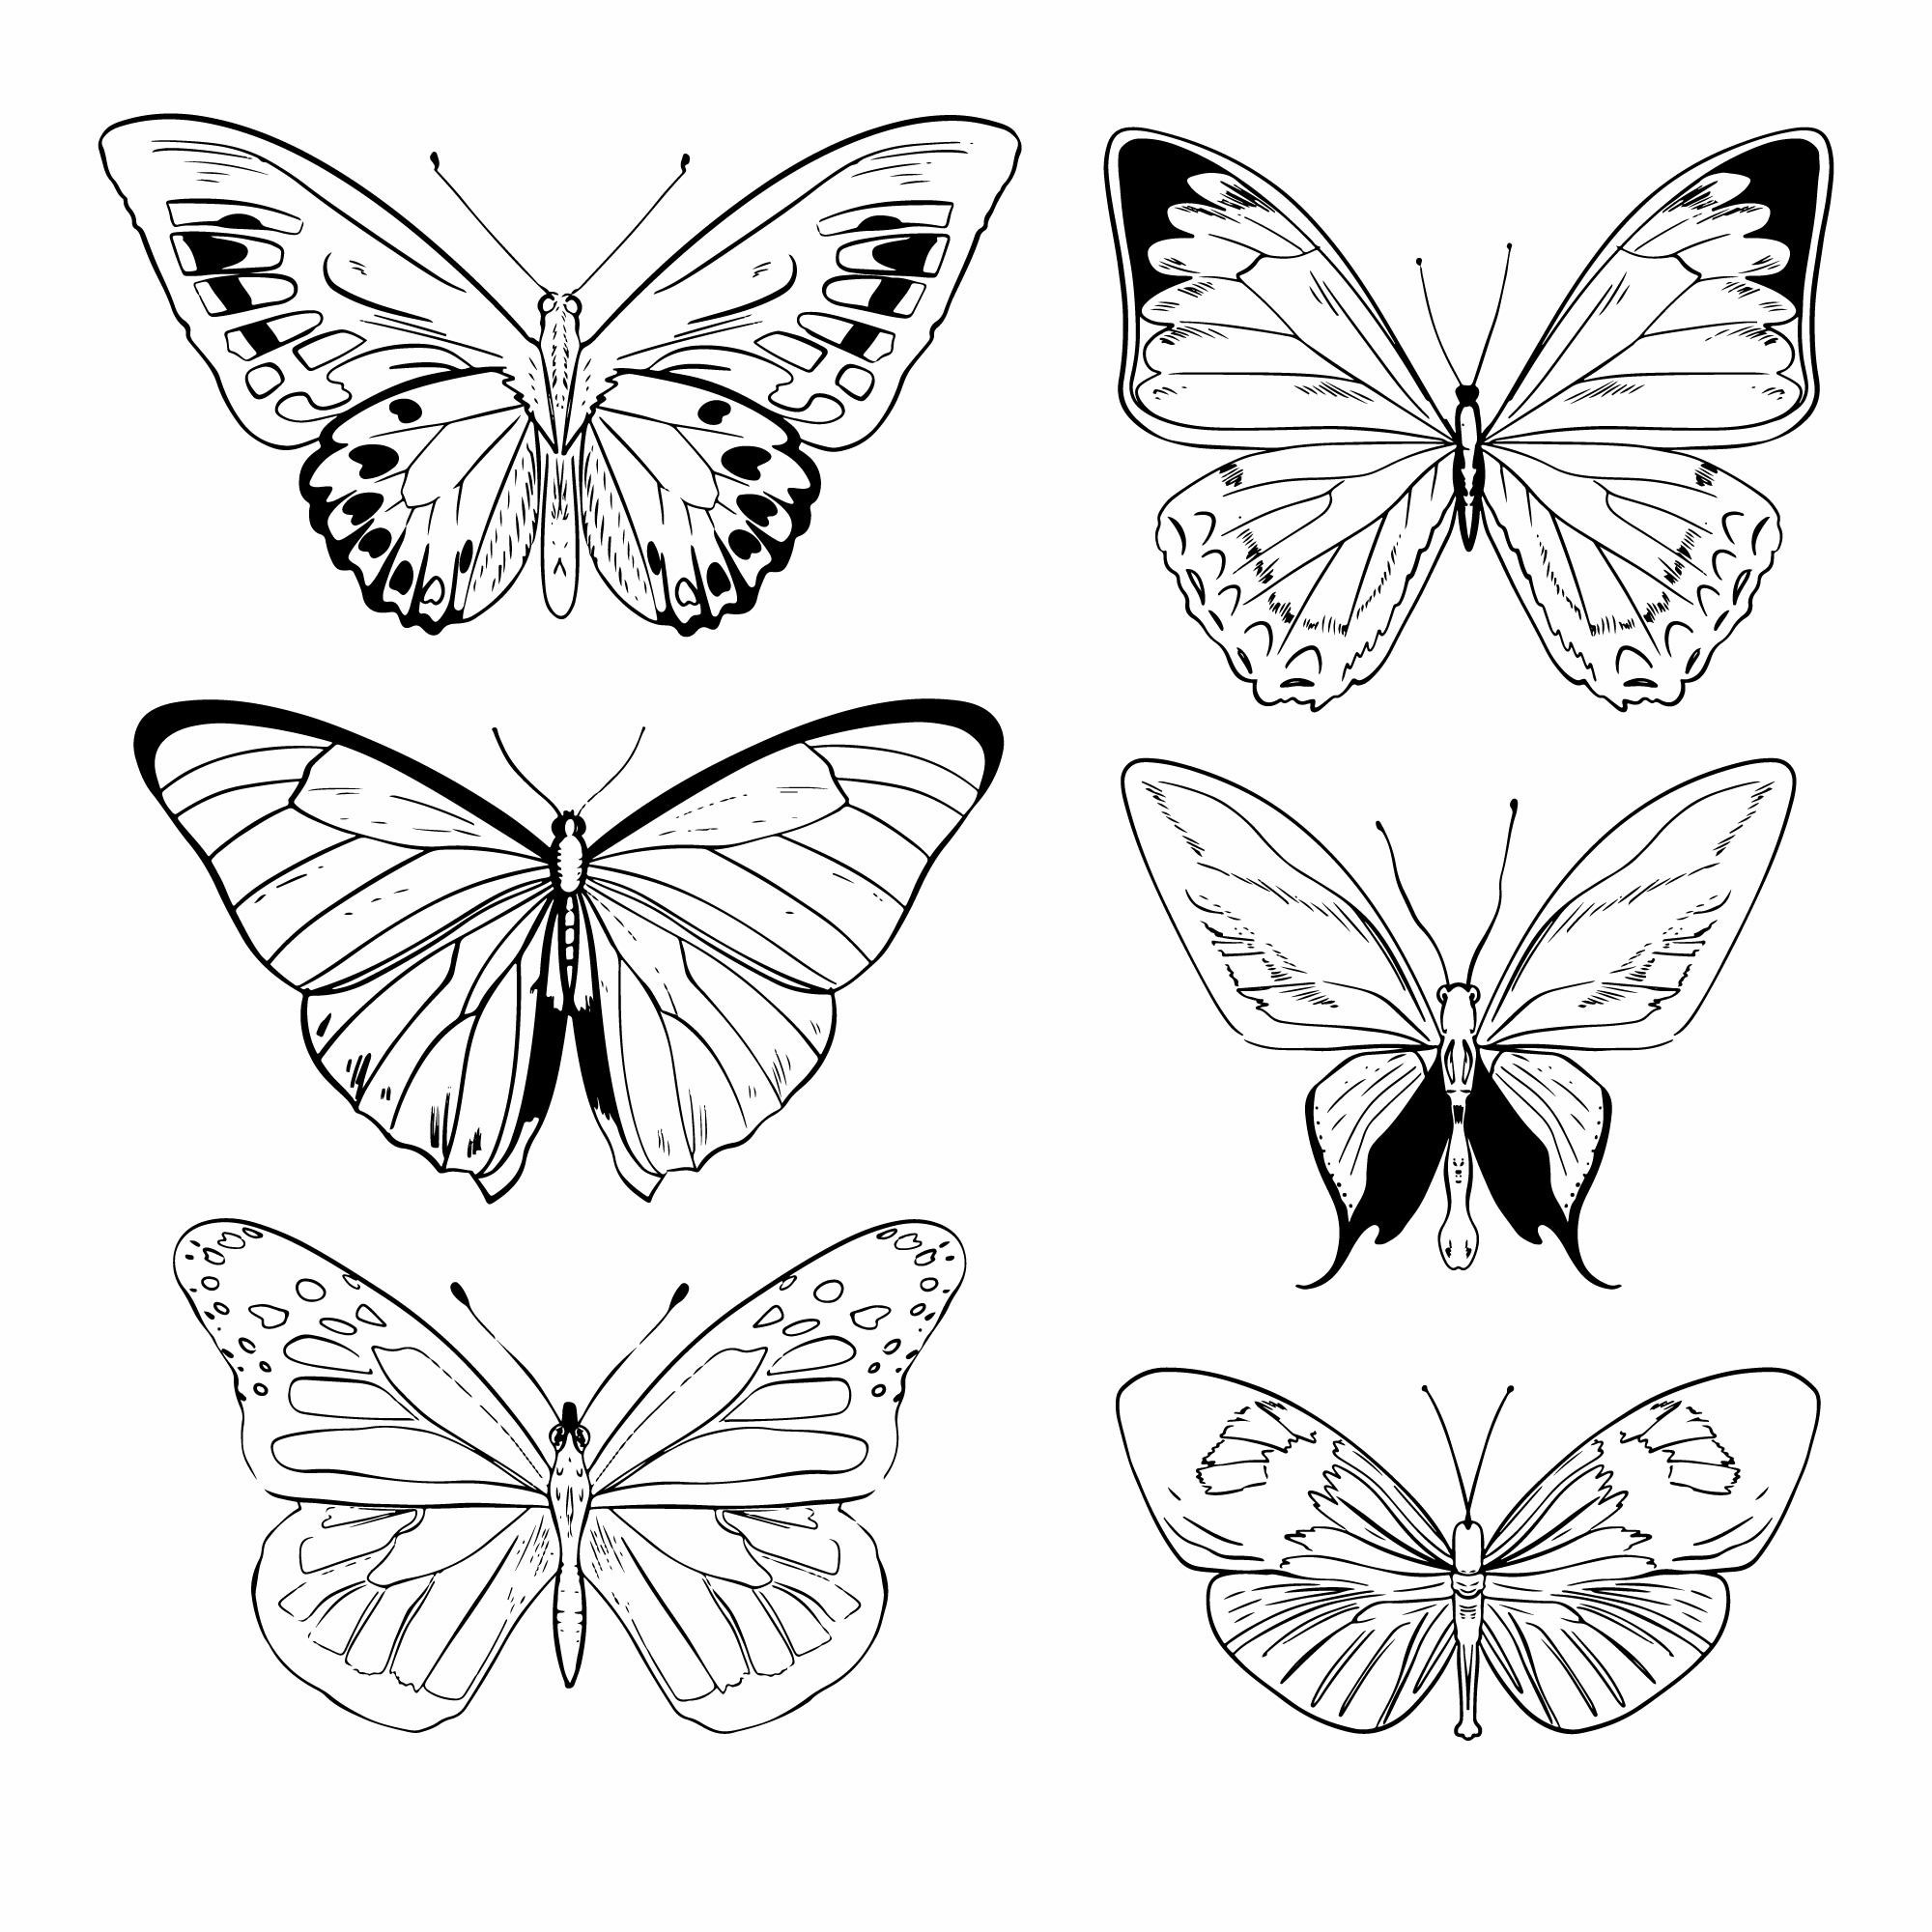 Раскраска для детей: коллекция рисунков бабочки